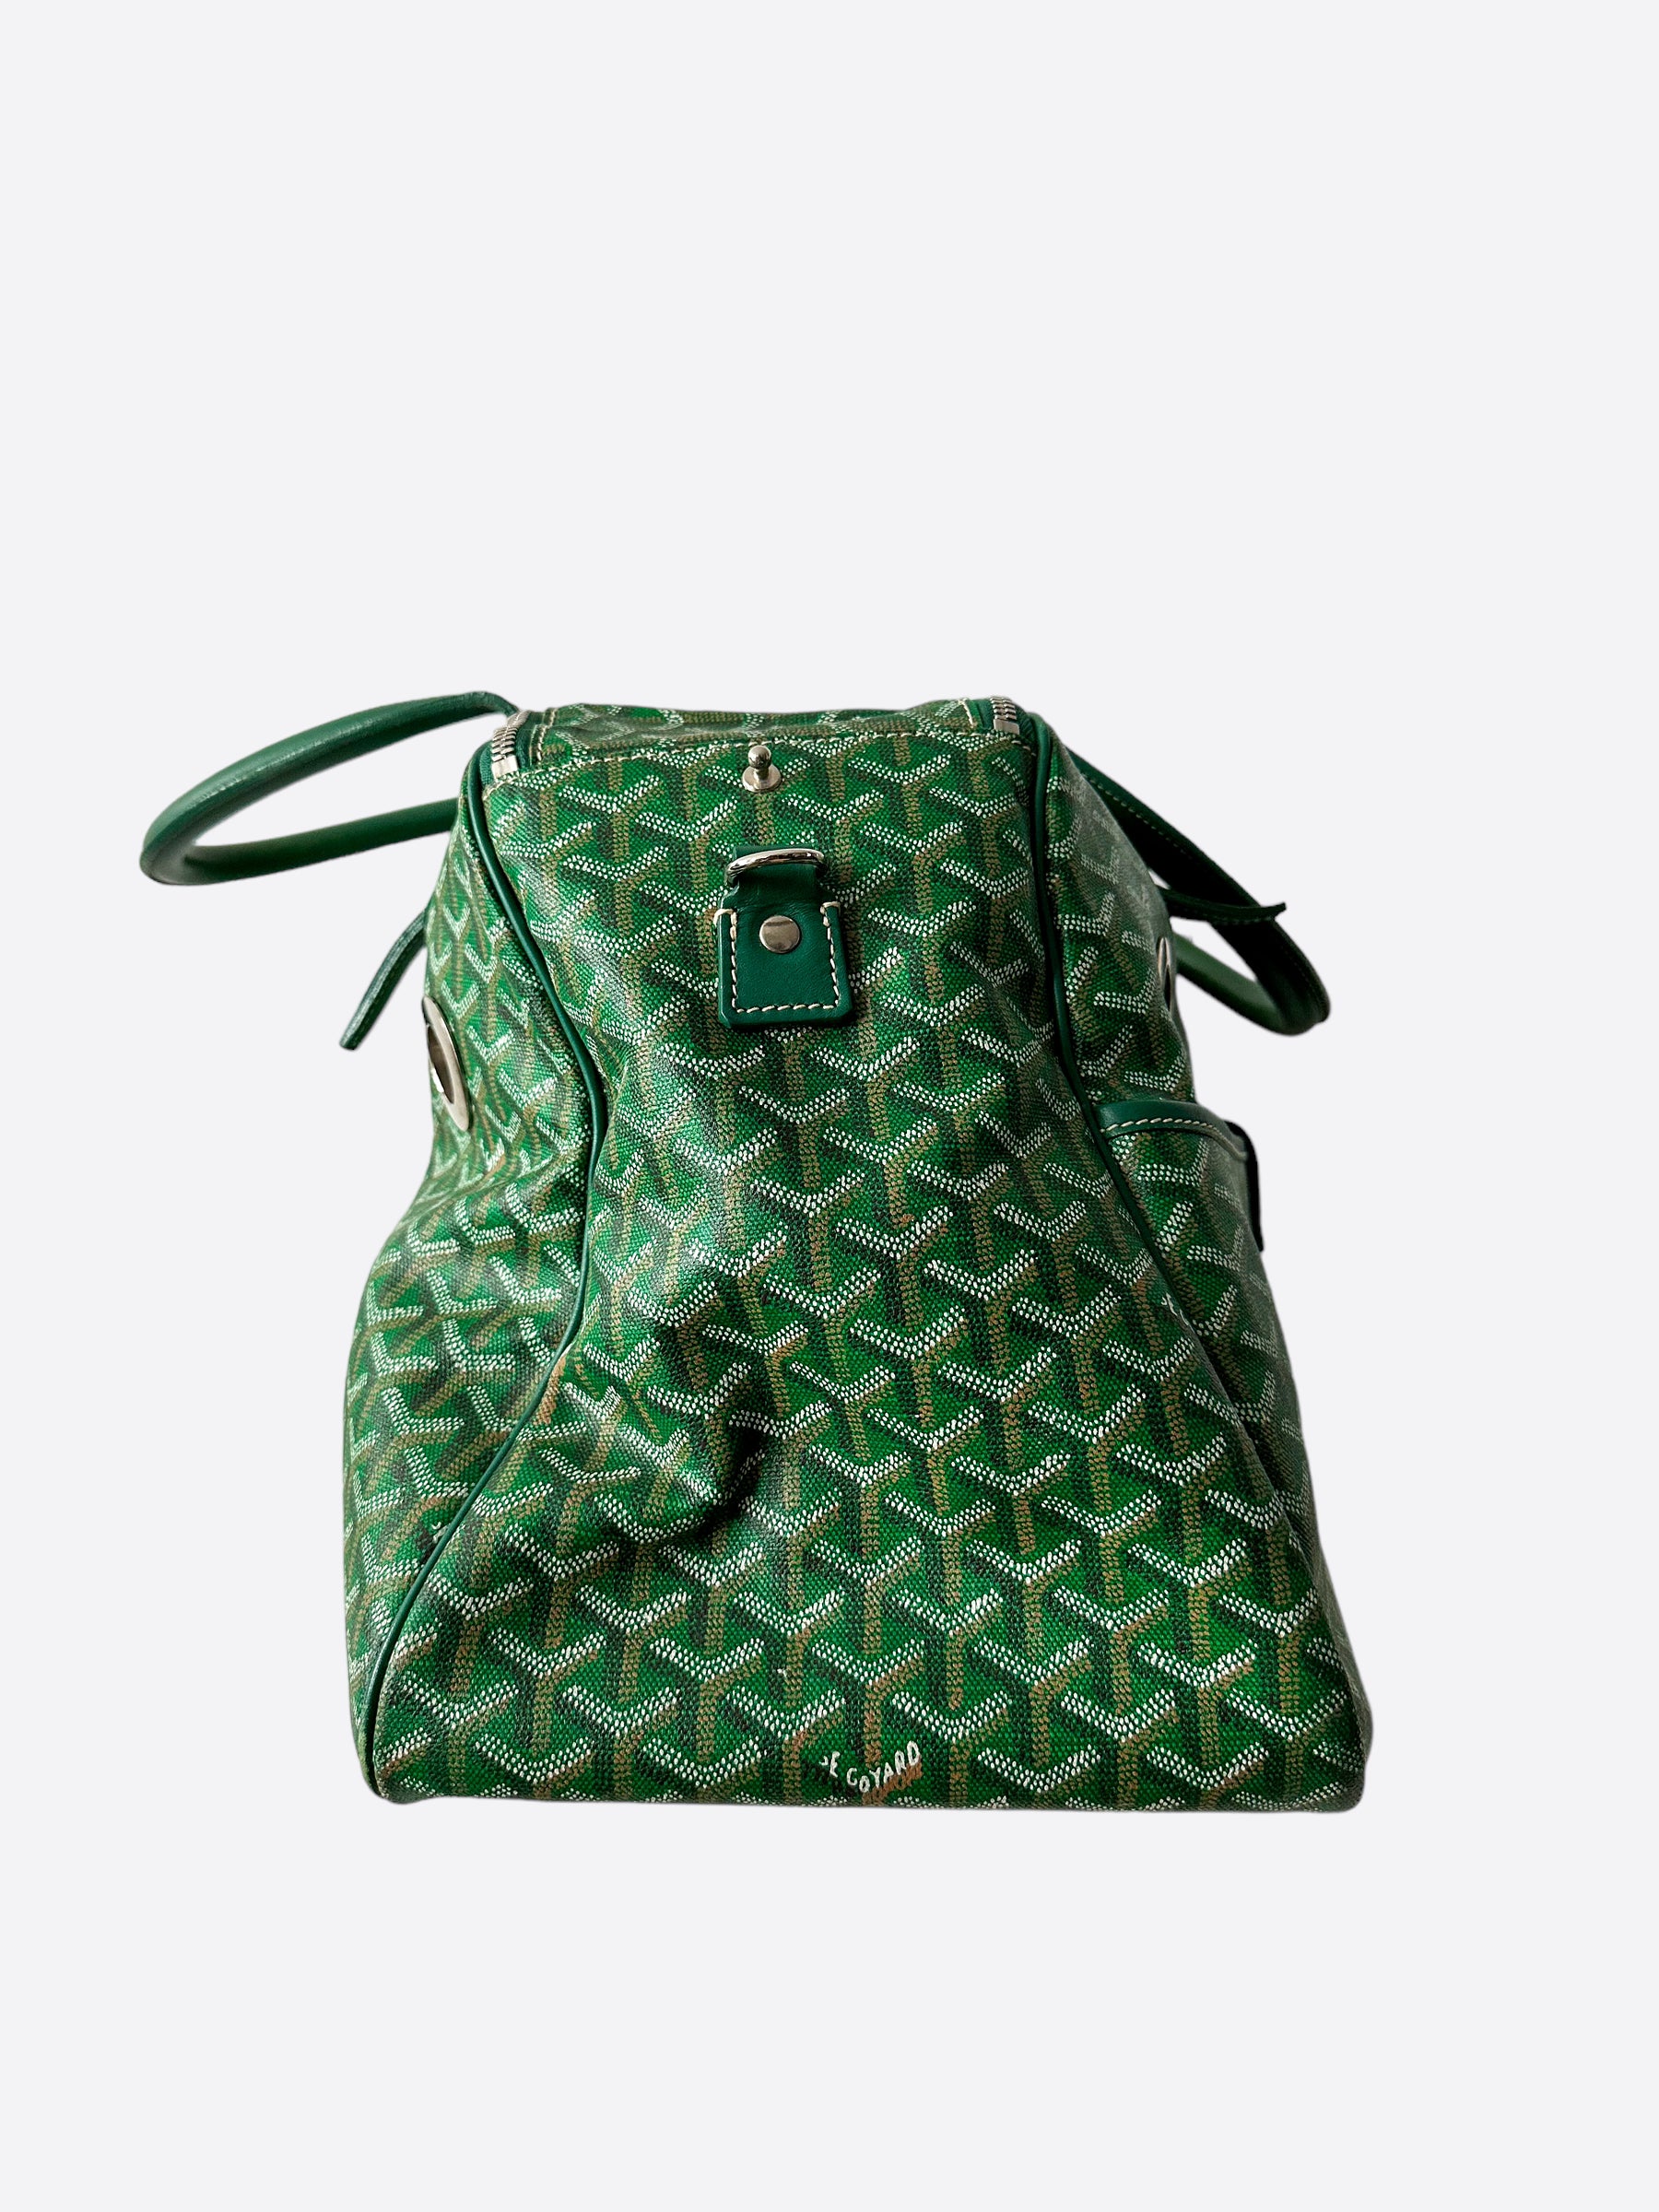 goyard backpack green